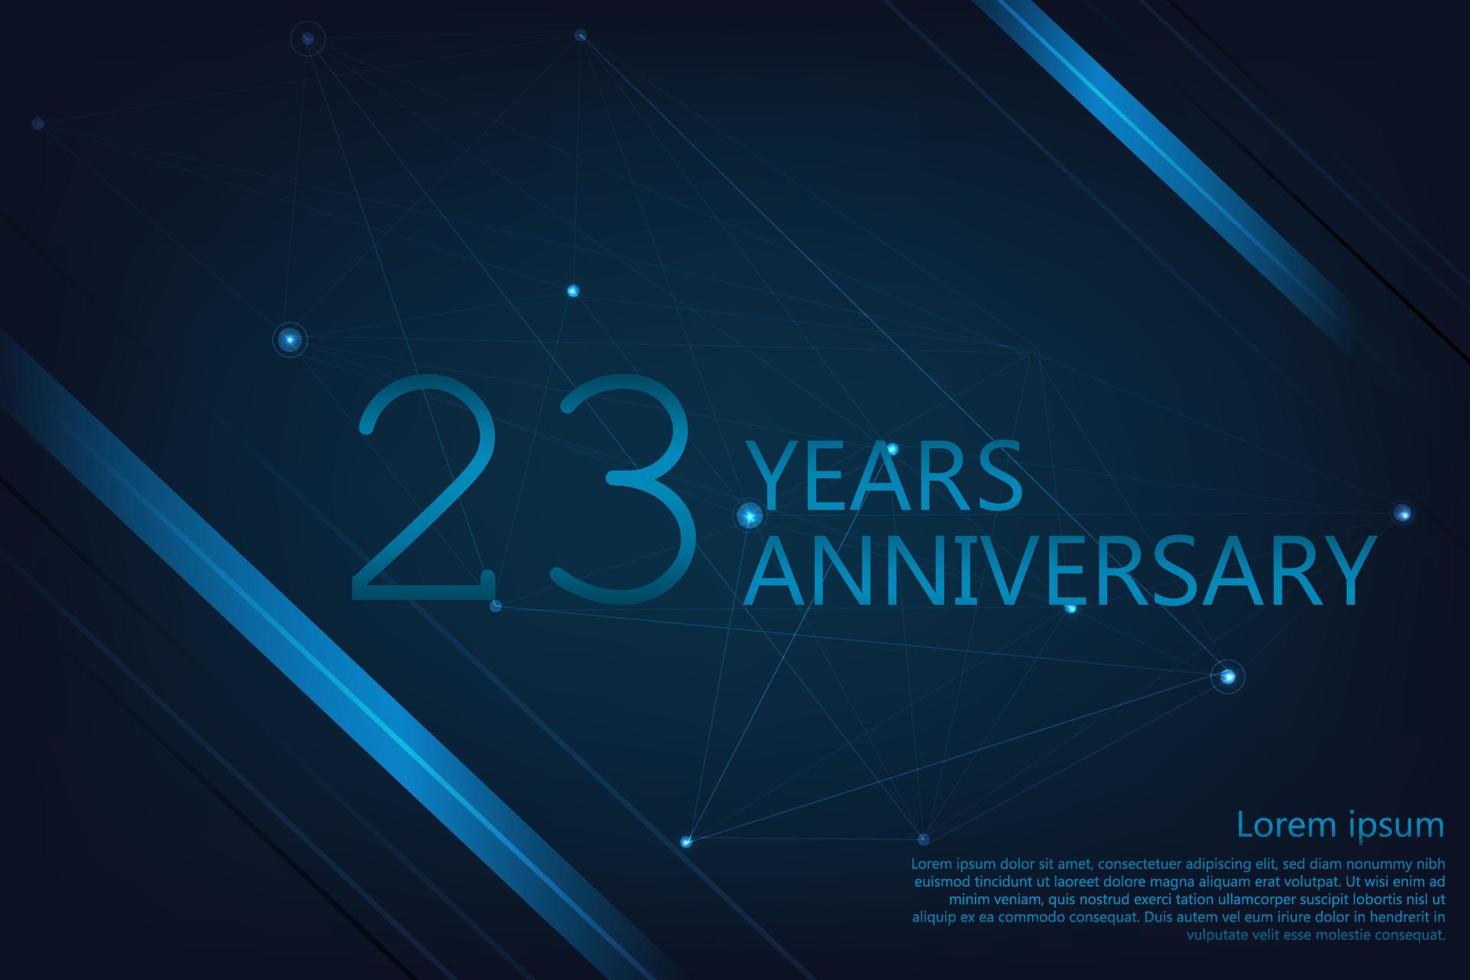 Bannière anniversaire 23 ans. modèle d'affiche pour célébrer la fête d'anniversaire. illustration vectorielle vecteur